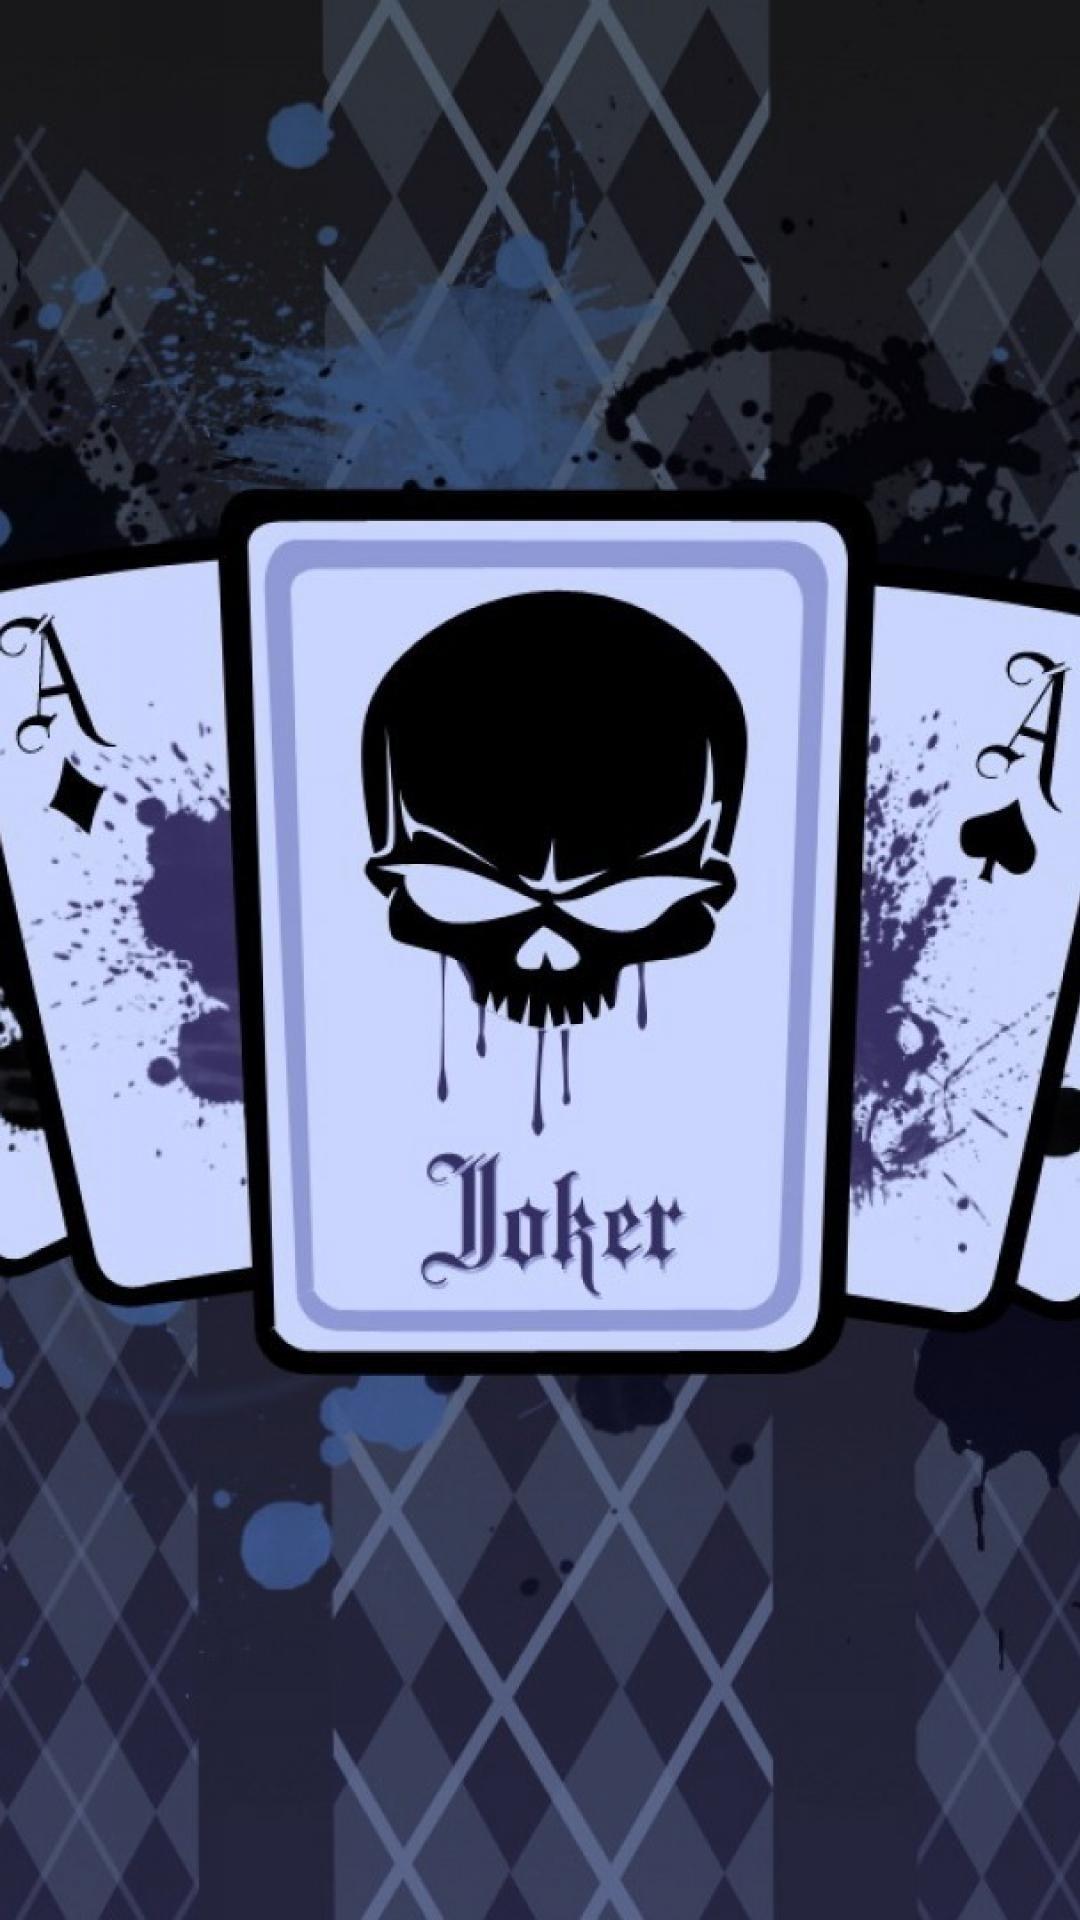 Joker Playing Card Wallpaper Mural - Murals Your Way